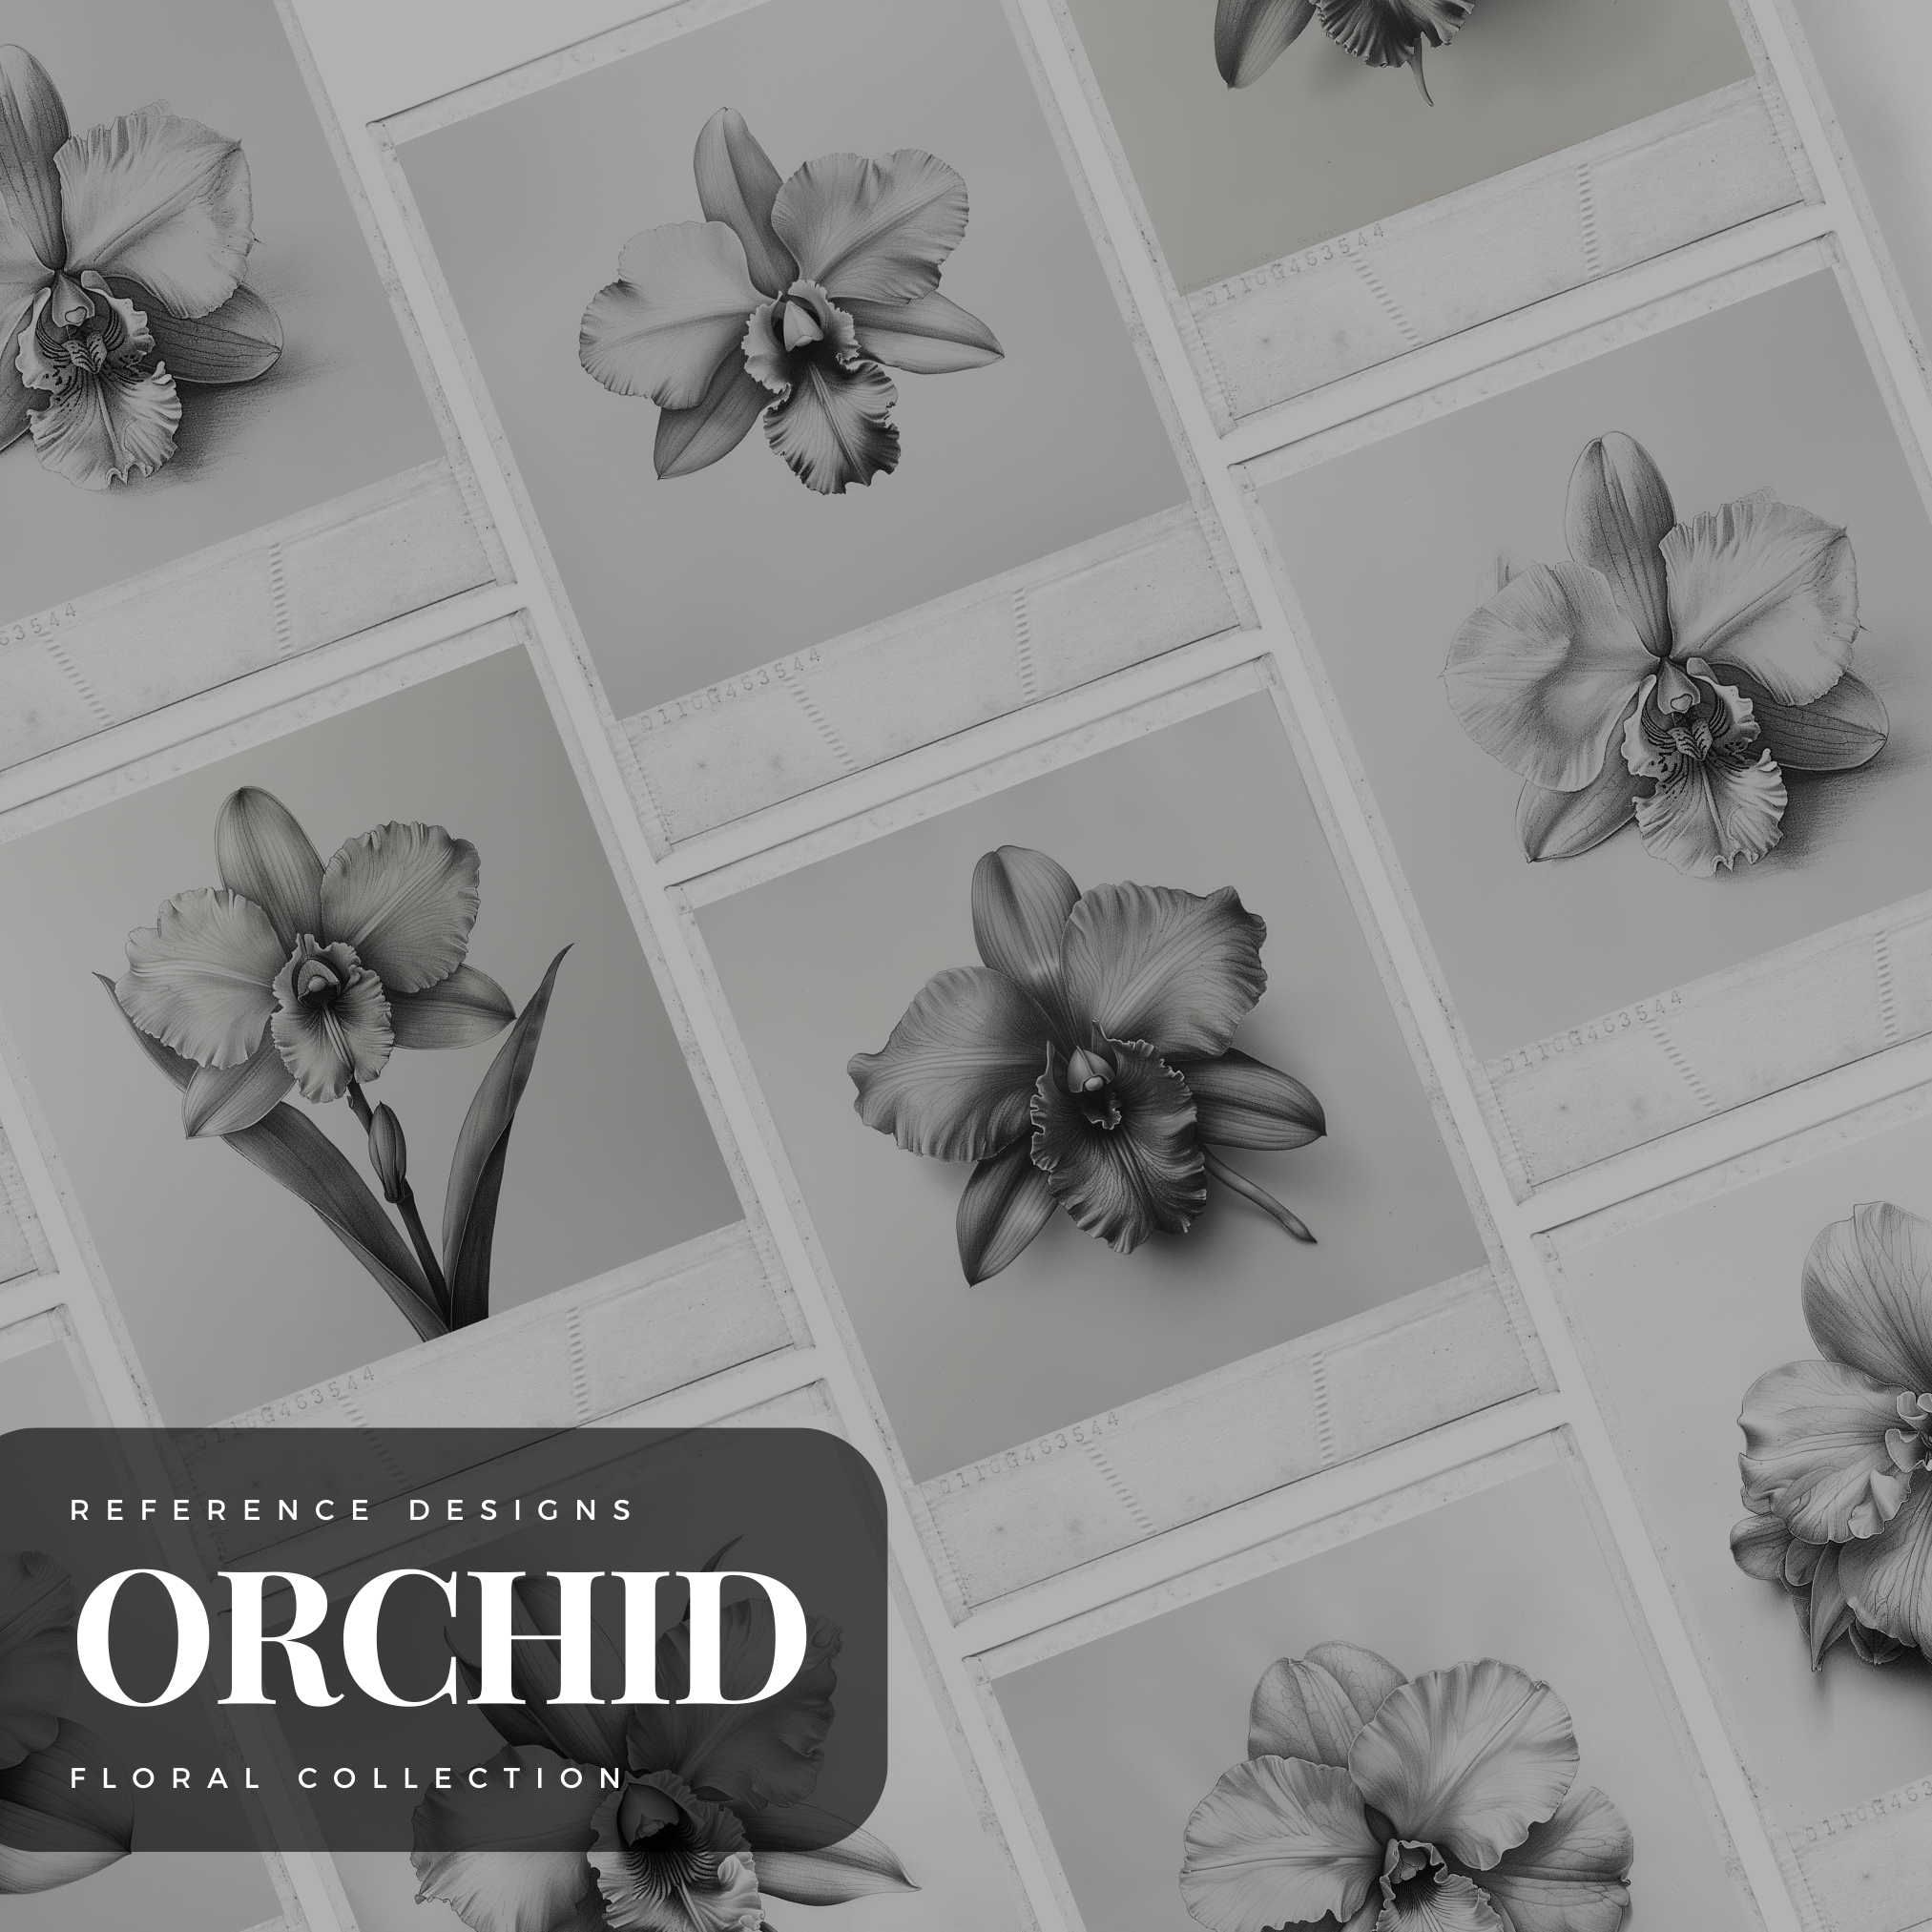 Orchids Digital Design Collection: 50 Procreate & Sketchbook Images